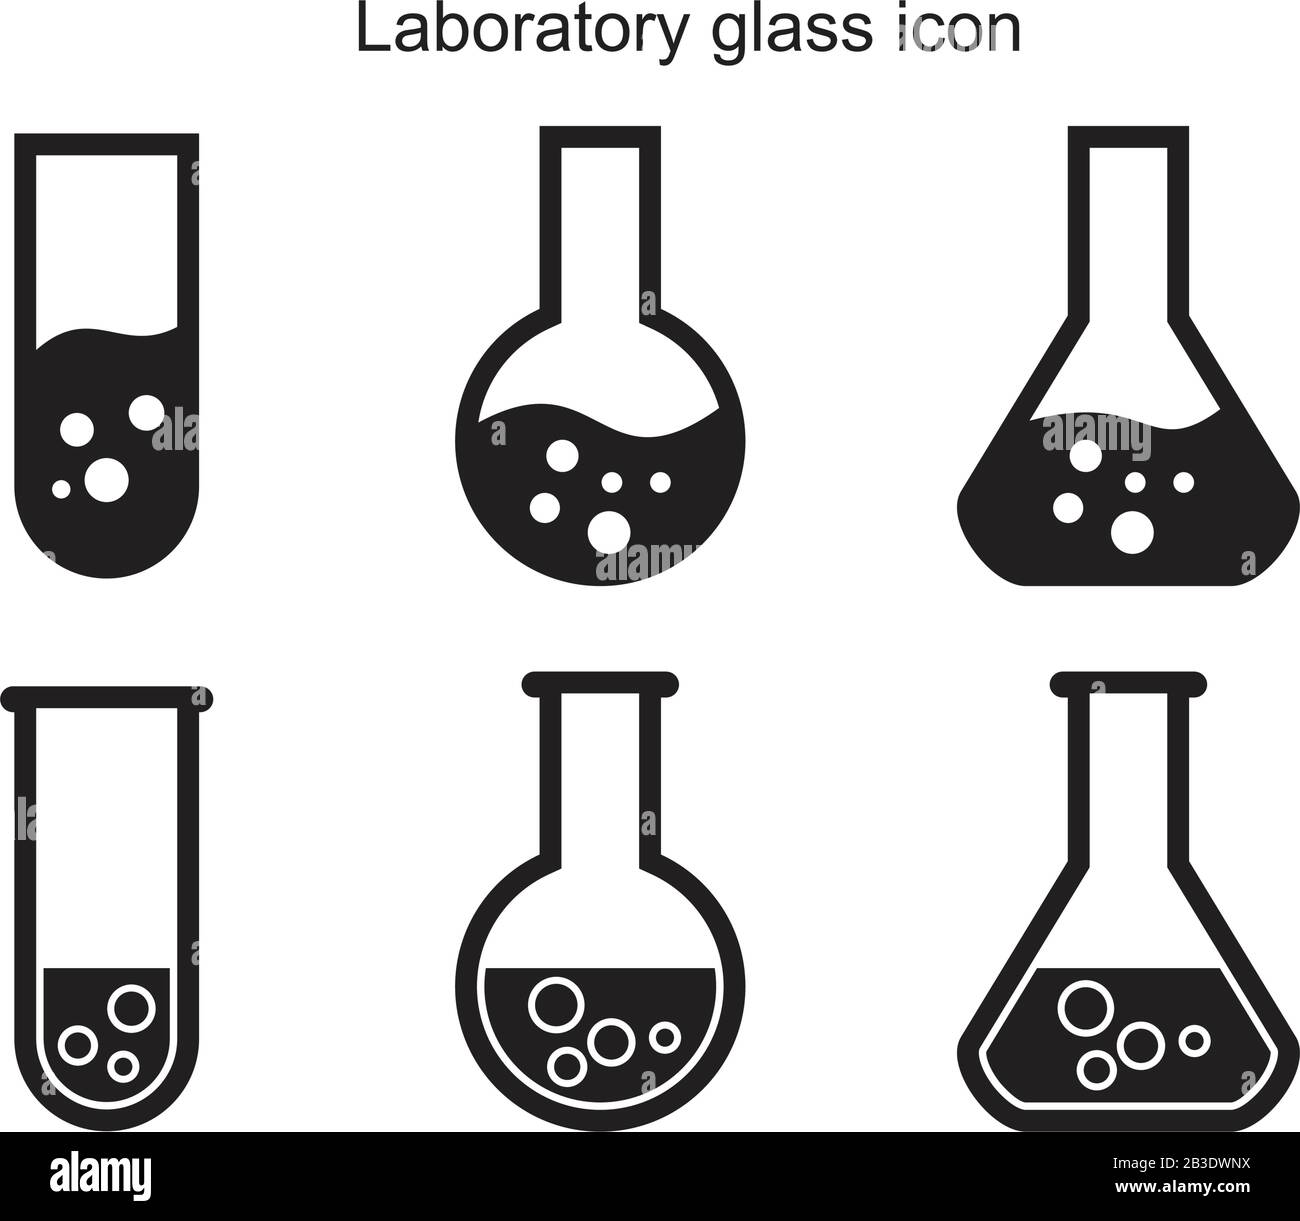 Modèle d'icône en verre de laboratoire couleur noire modifiable. Symbole d'icône en verre de laboratoire illustration vectorielle plate pour la conception graphique et Web. Illustration de Vecteur